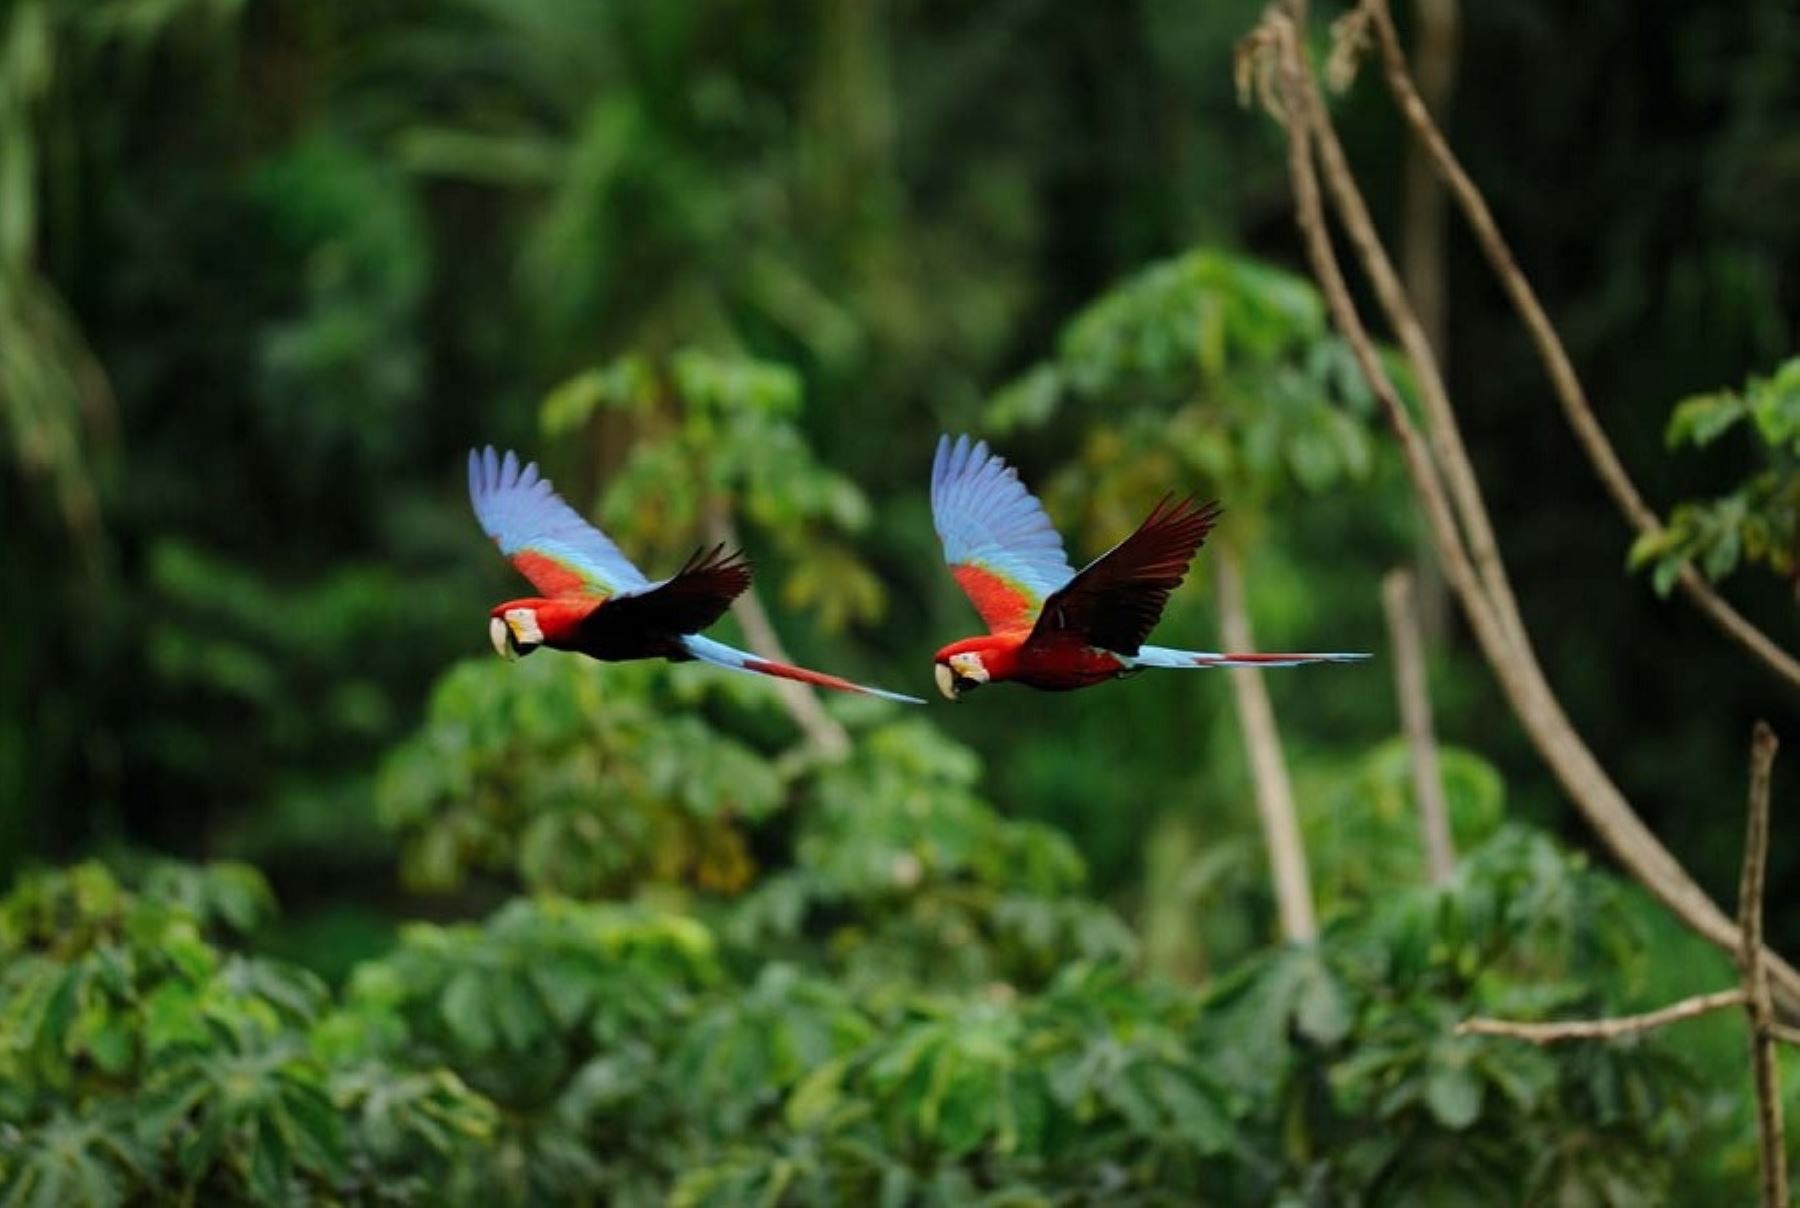 Con una superficie total de 274,690 hectáreas, la Reserva Nacional Tambopata alberga una megadiversidad biológica, que en fauna se expresa en 648 especies de aves, entre las que destacan los coloridos guacamayos.